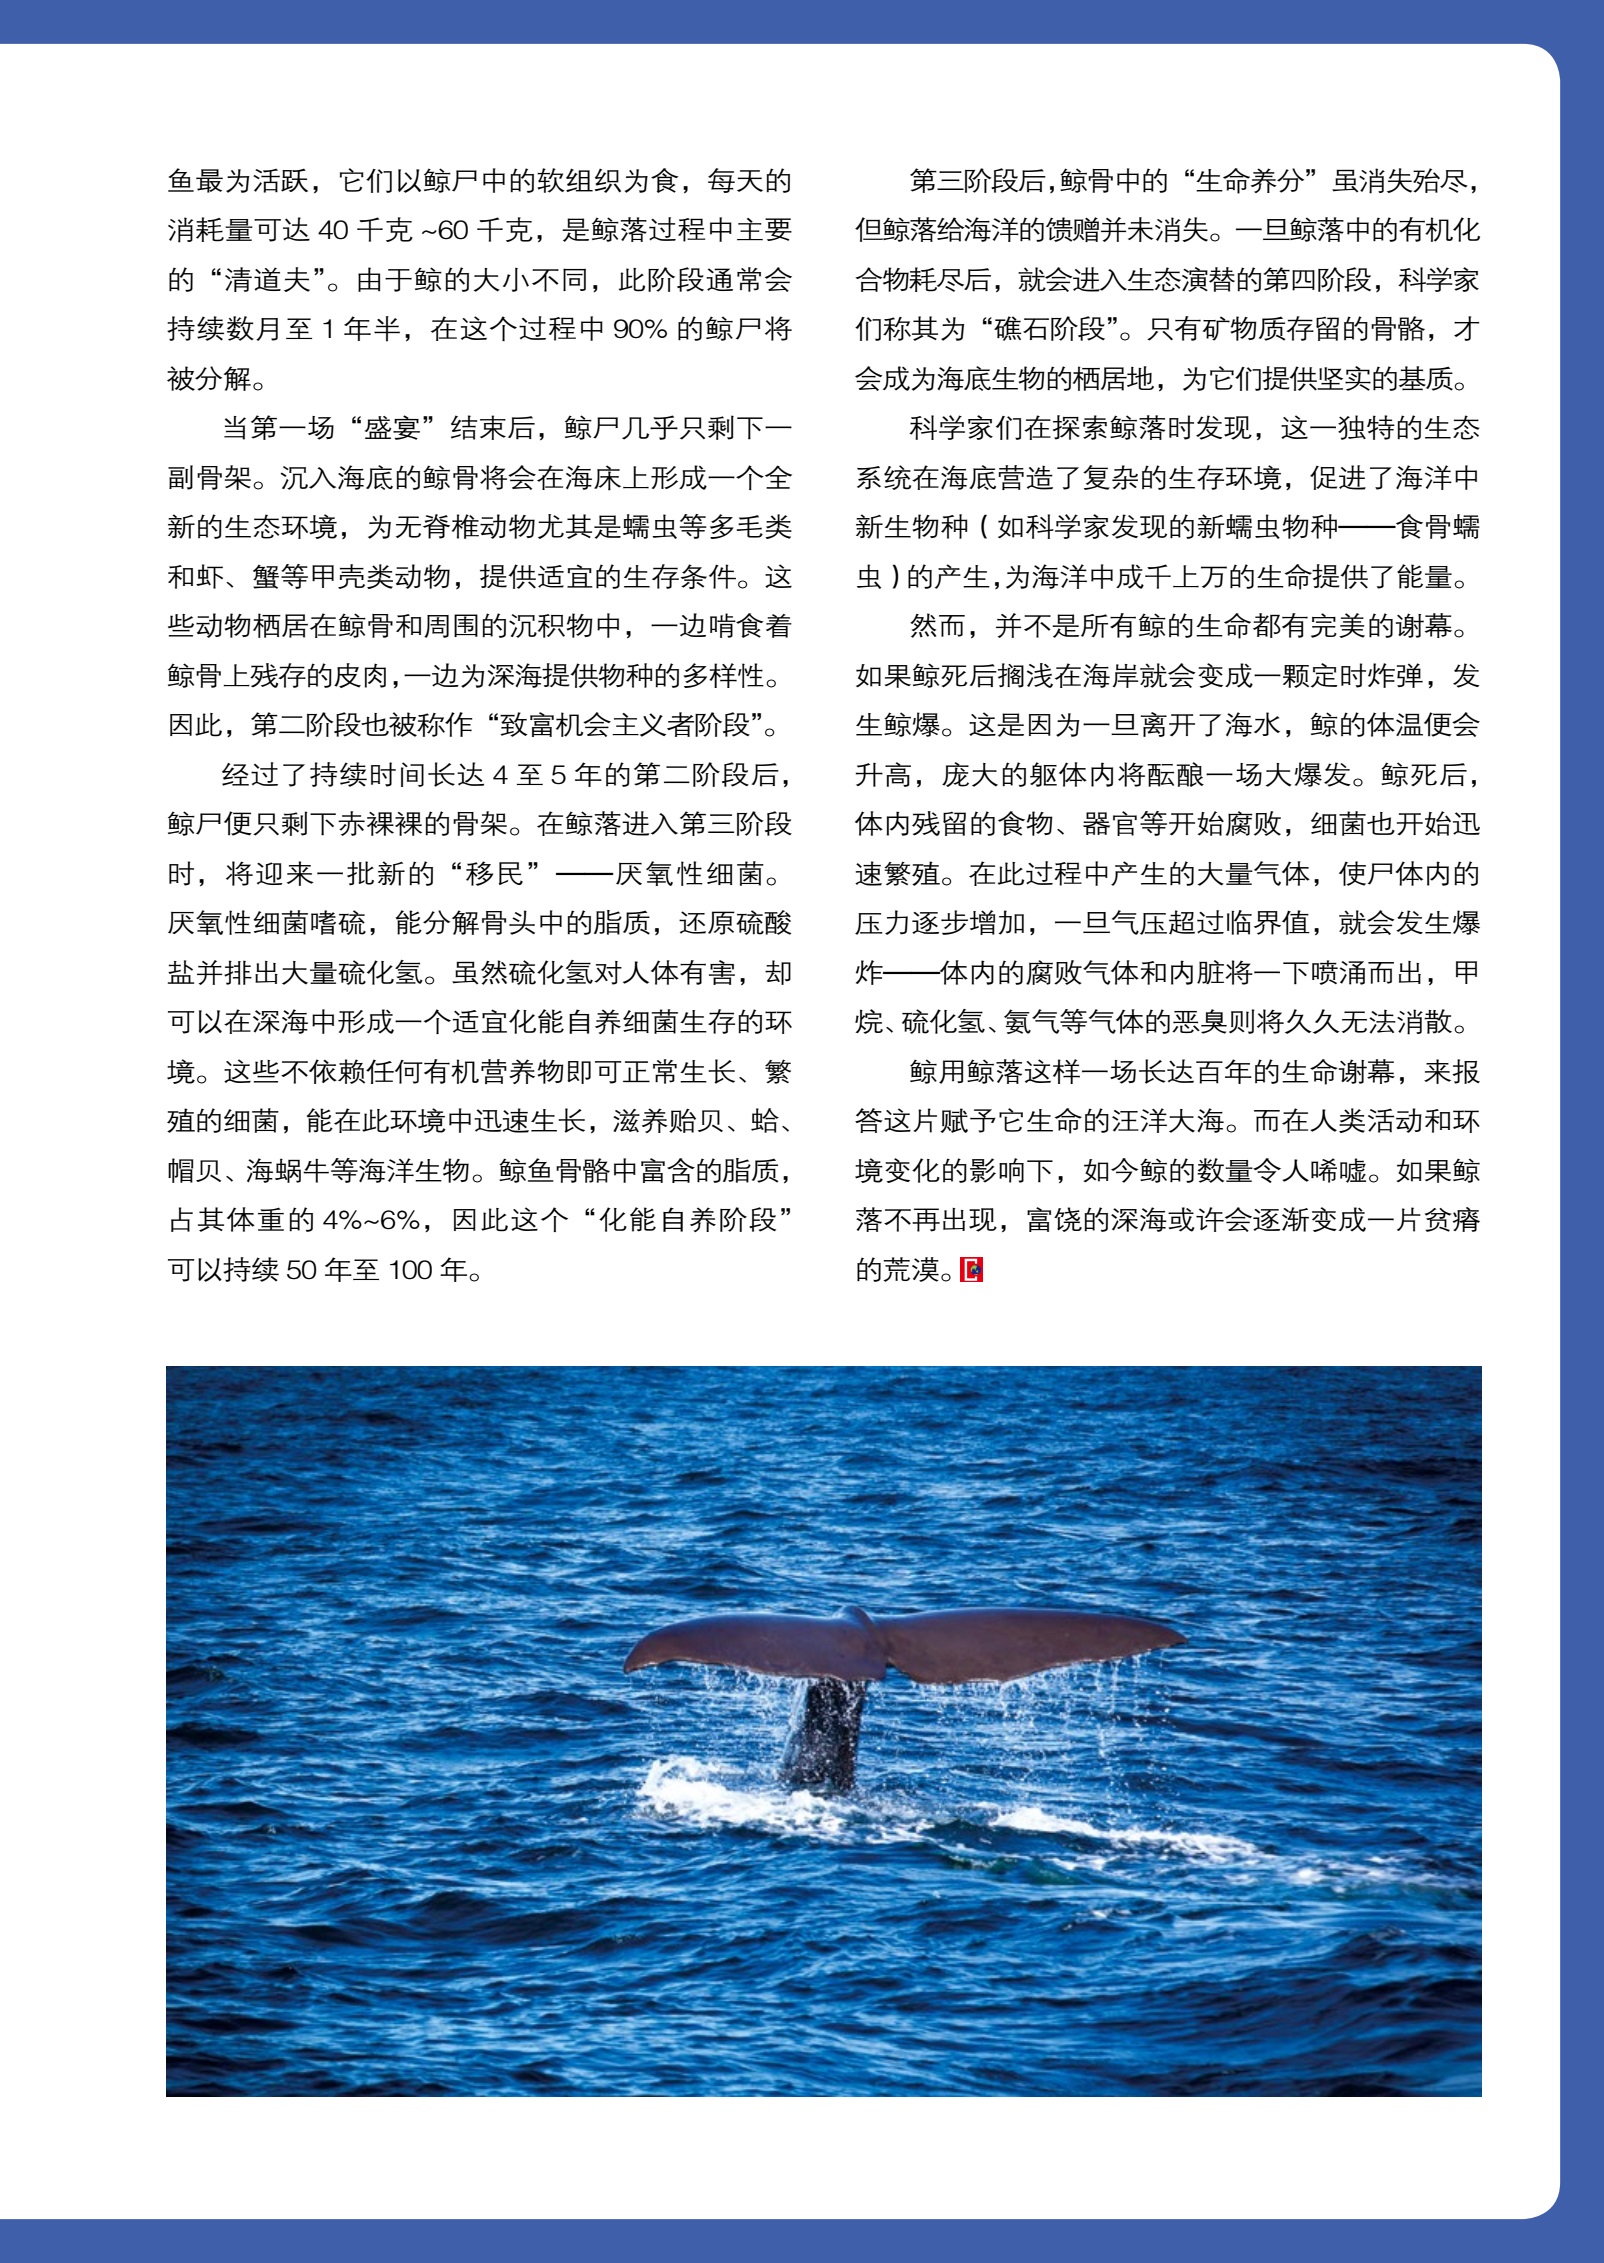 “一鲸落万物生”——世界上最温柔、最有意义的死亡_深海